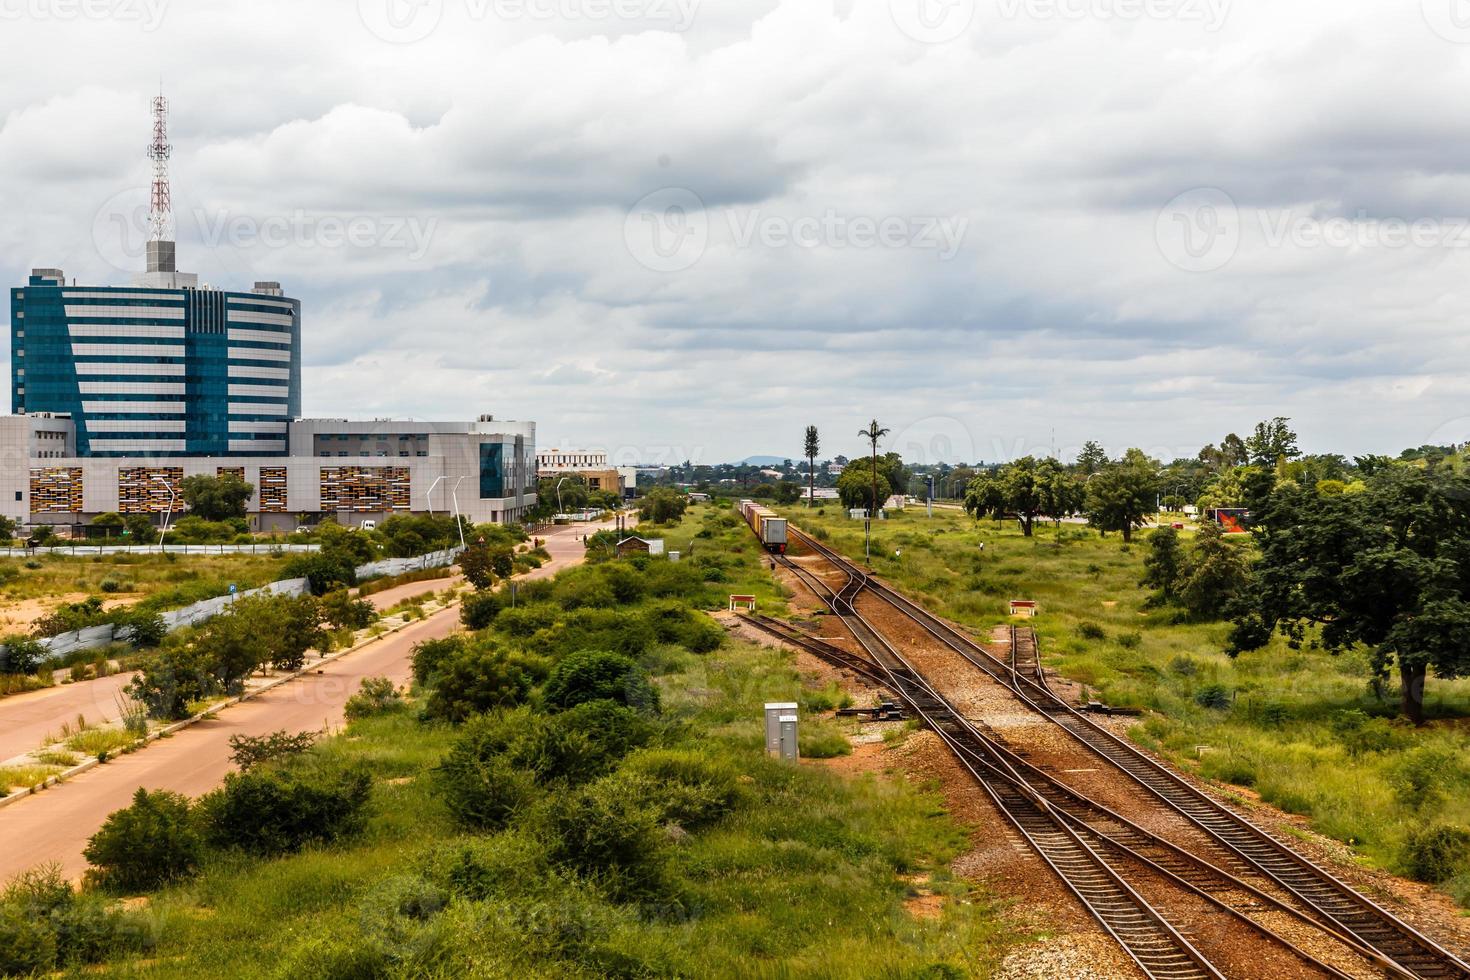 ferrovia e distrito comercial central em rápido desenvolvimento, gaborone, botswana, áfrica, 2017 foto